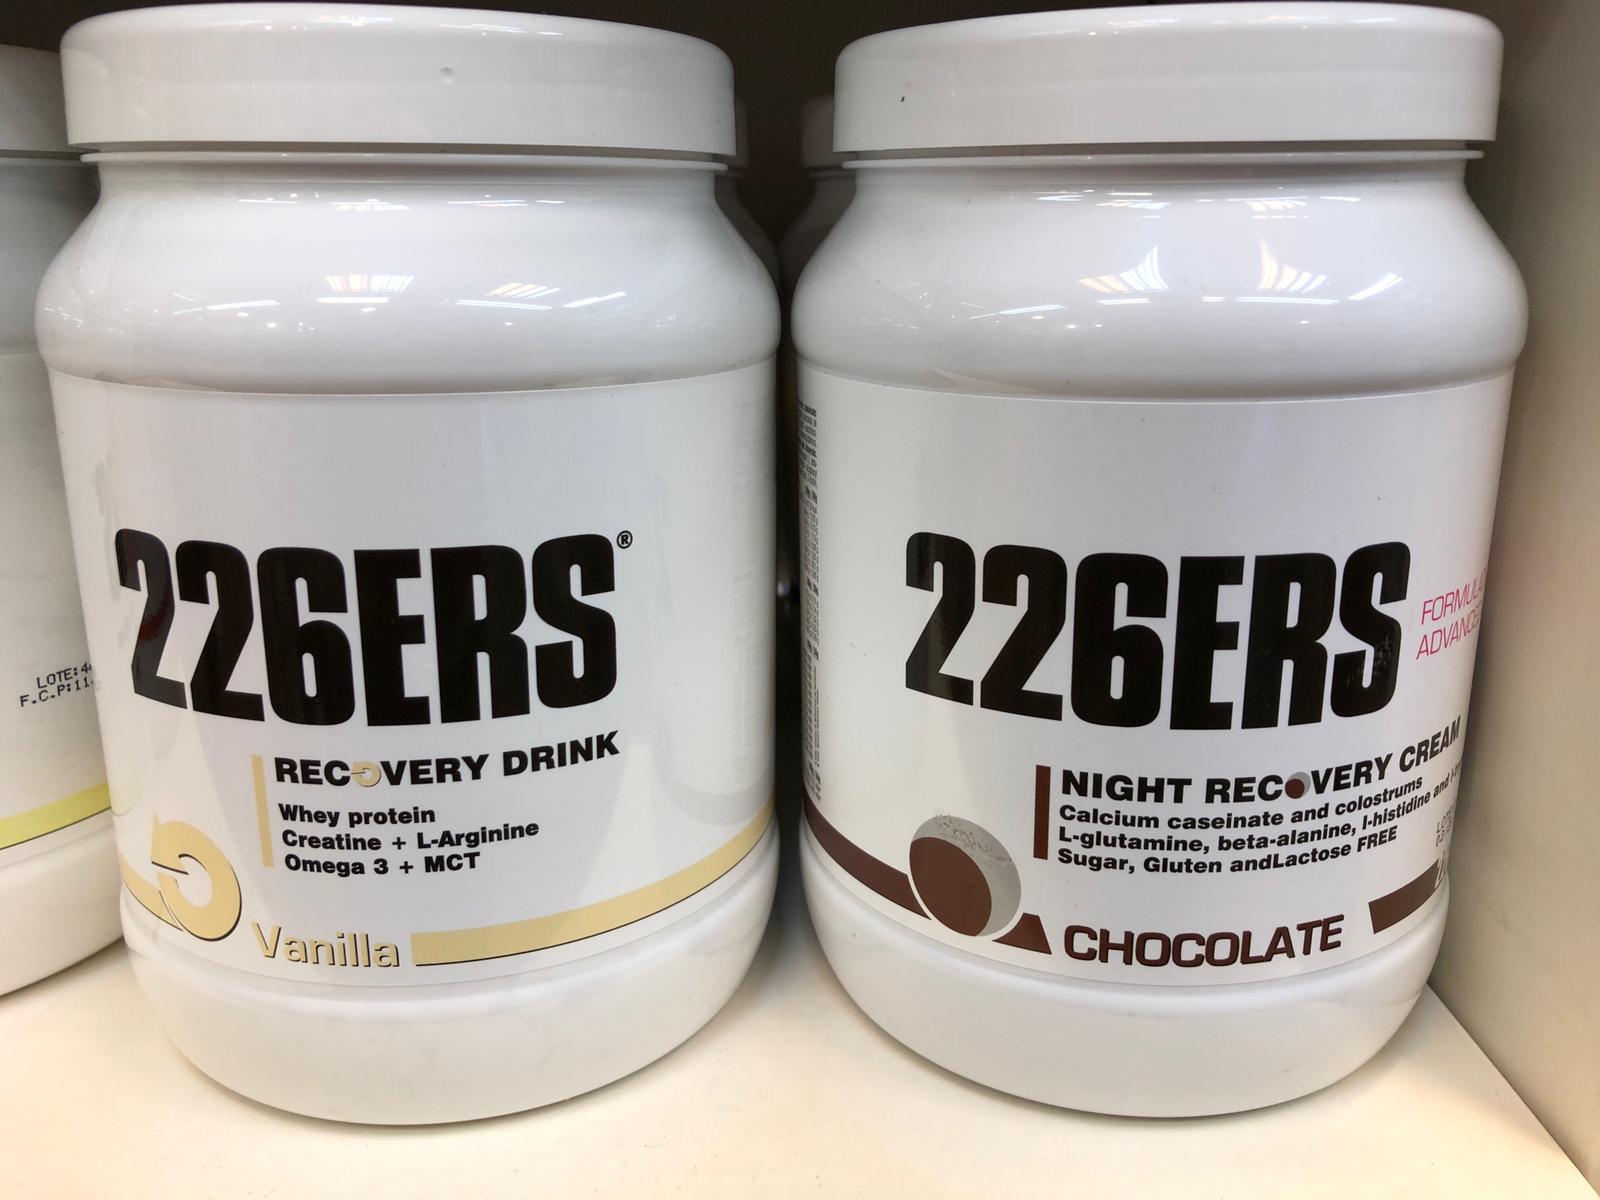 Productos 226ERS 226ERS es una marca creada por y para los amantes de deportes outdoor y resistencia máx exigentes. Prueba ya su amplia gama de recuperadores, barritas o geles energéticos libres de gluten y lactosa.